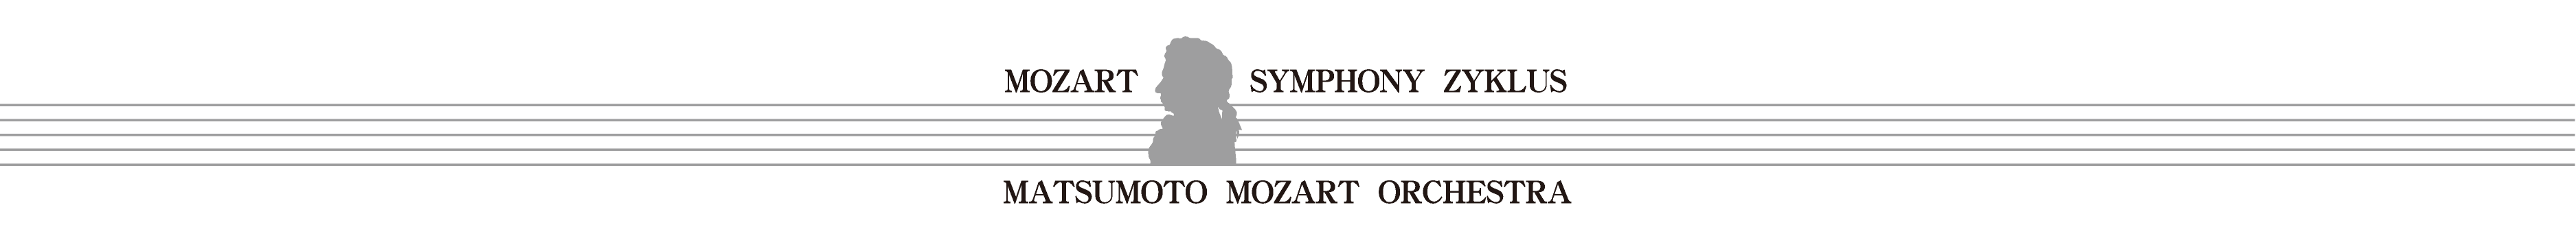 第１回 モーツァルト交響曲・全曲演奏会